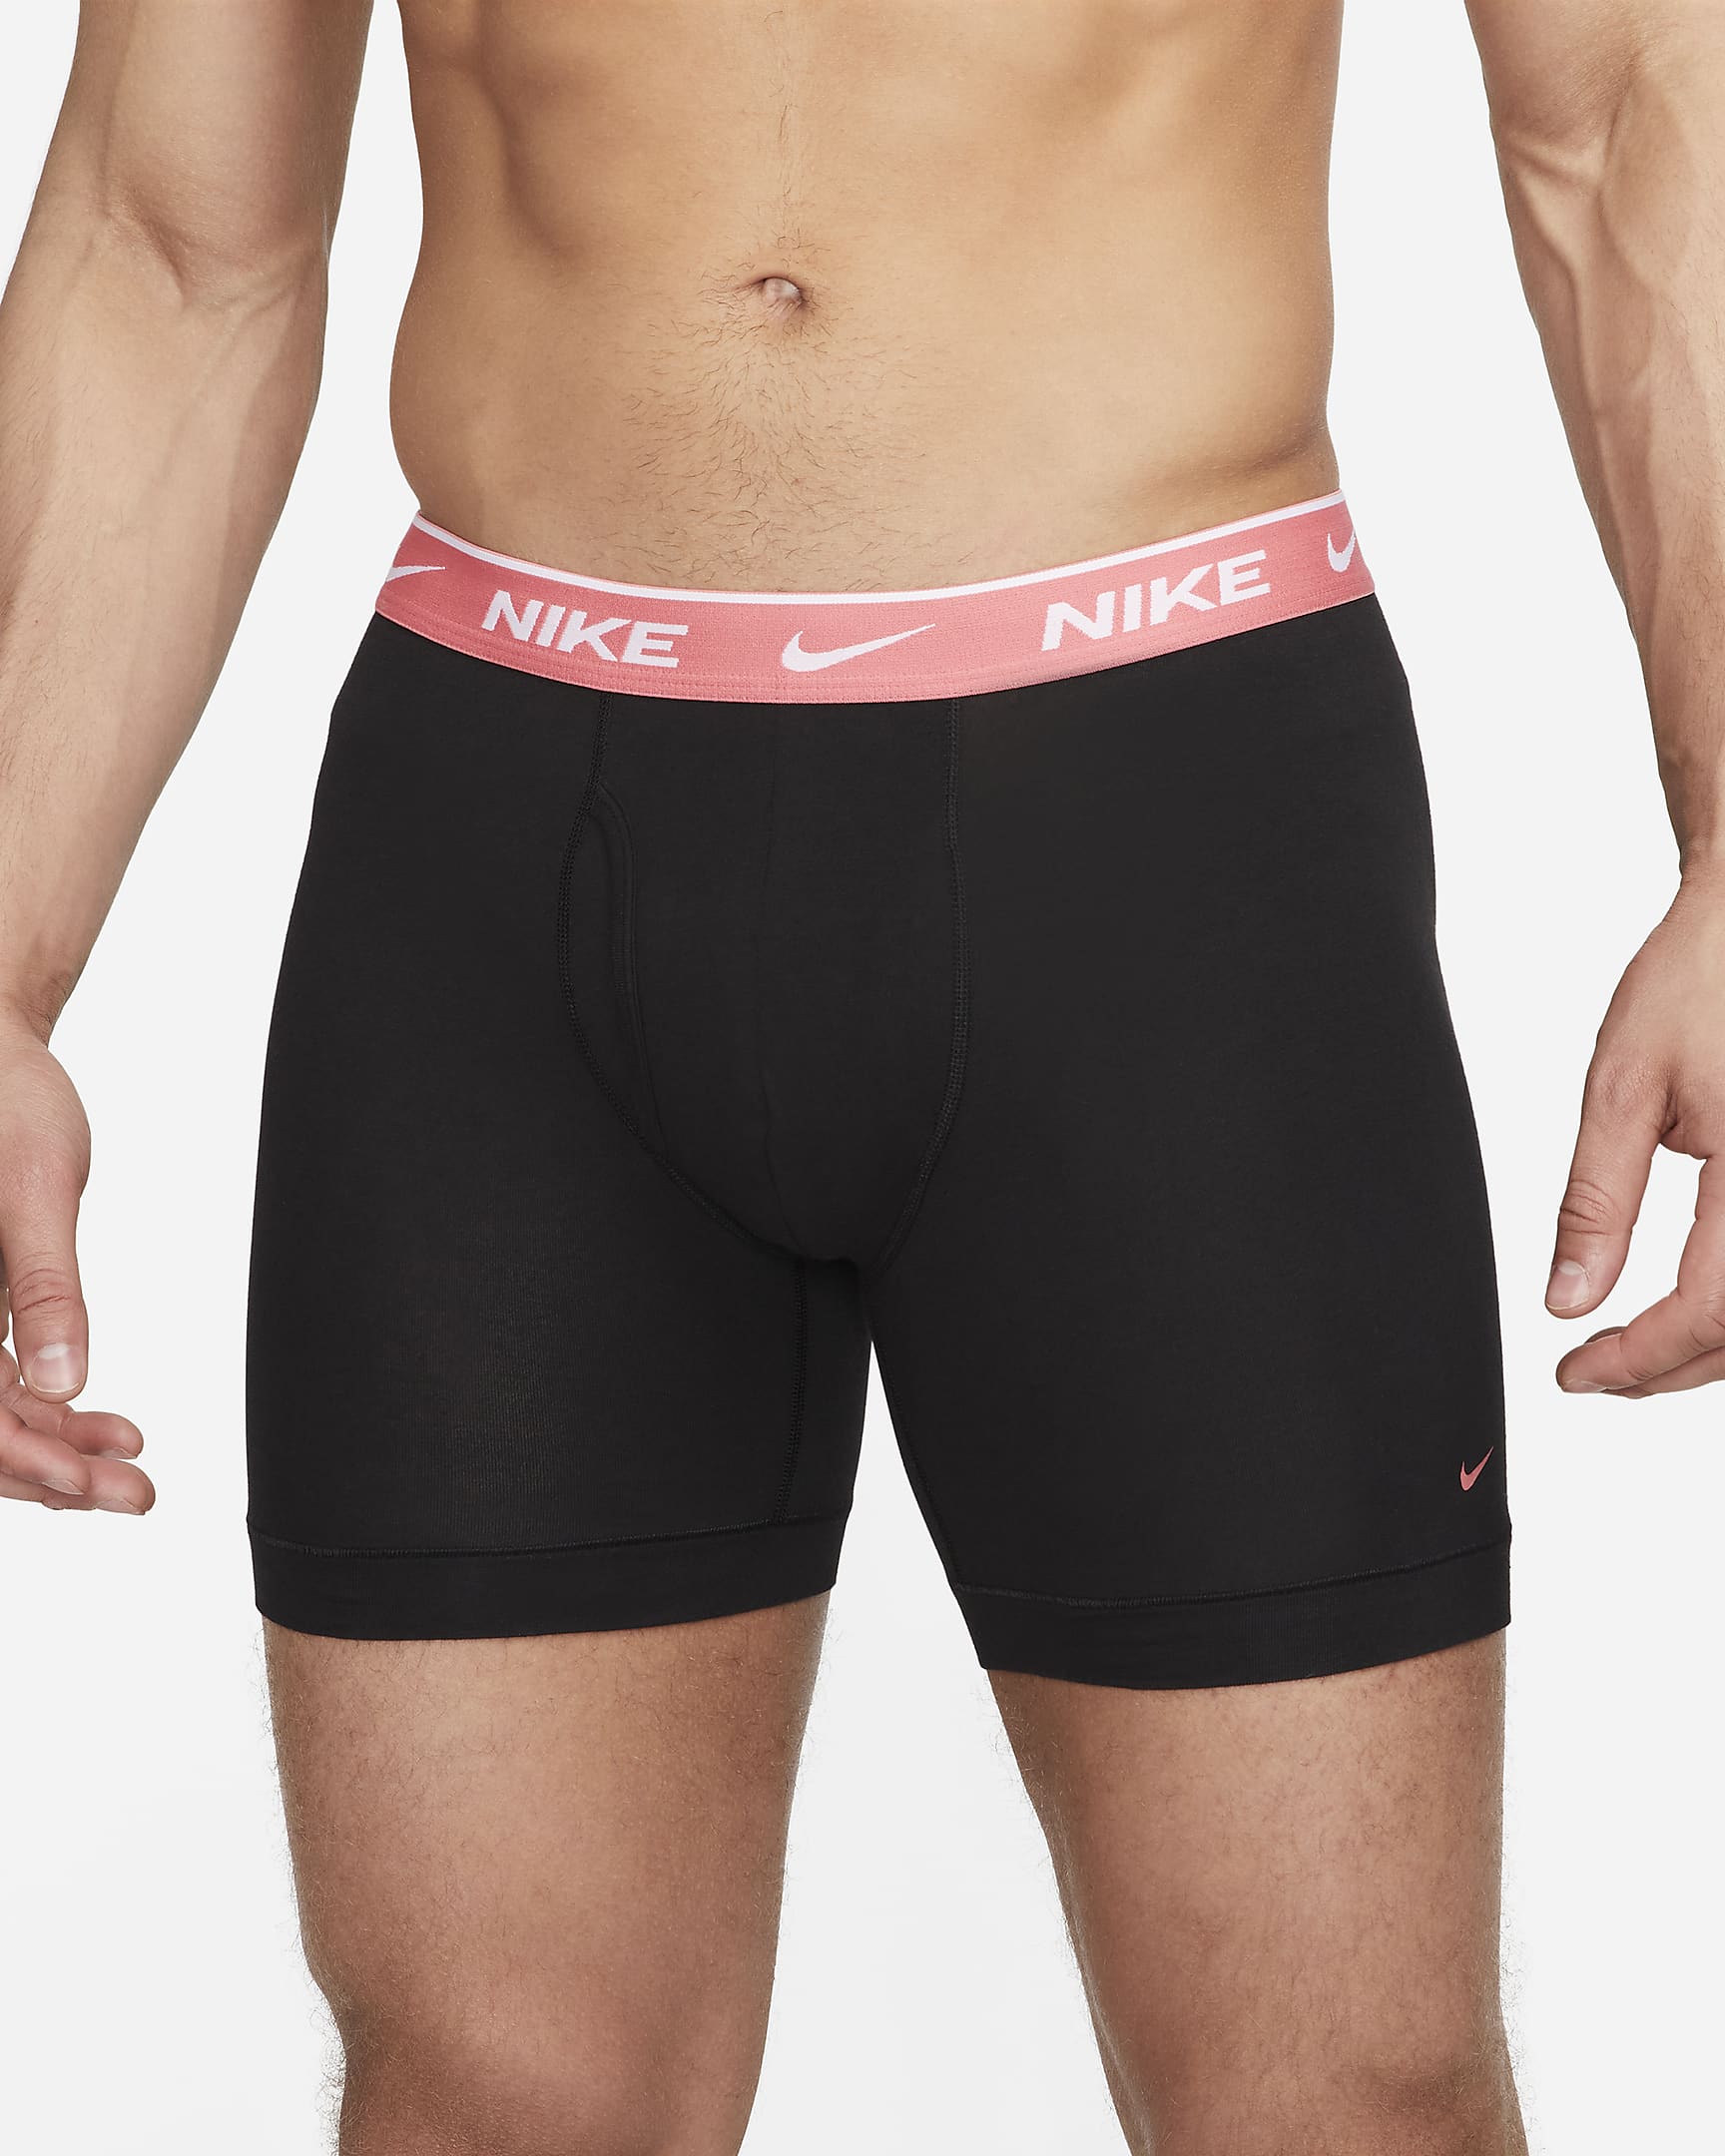 Nike DriFIT Essential Cotton Stretch Men's Boxer Briefs (3Pack).